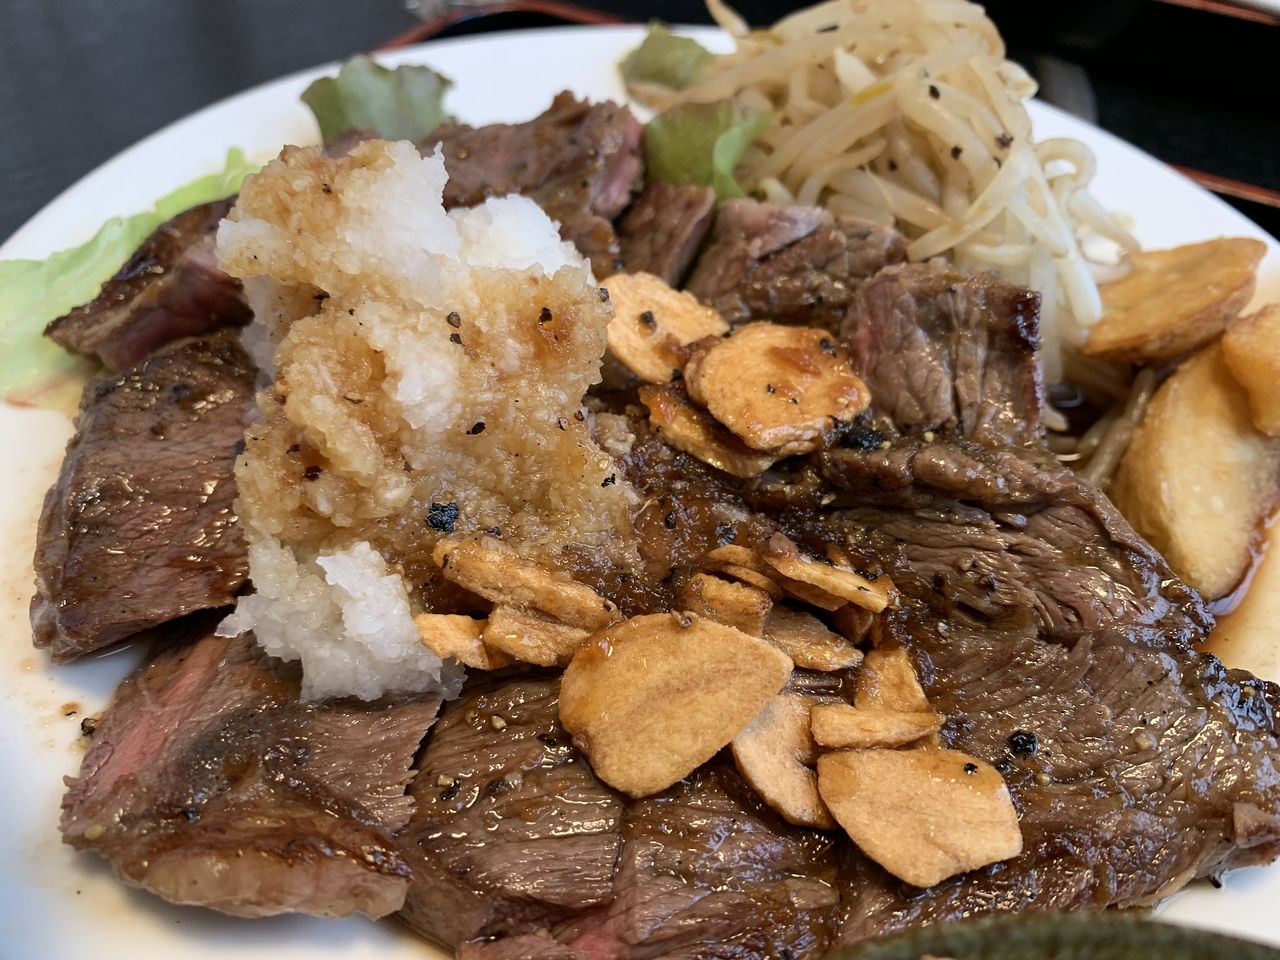 【三郷市食べ歩きブログ】三郷市三郷2丁目にある日本料理「栗はら」さんへランチに行ってきました！